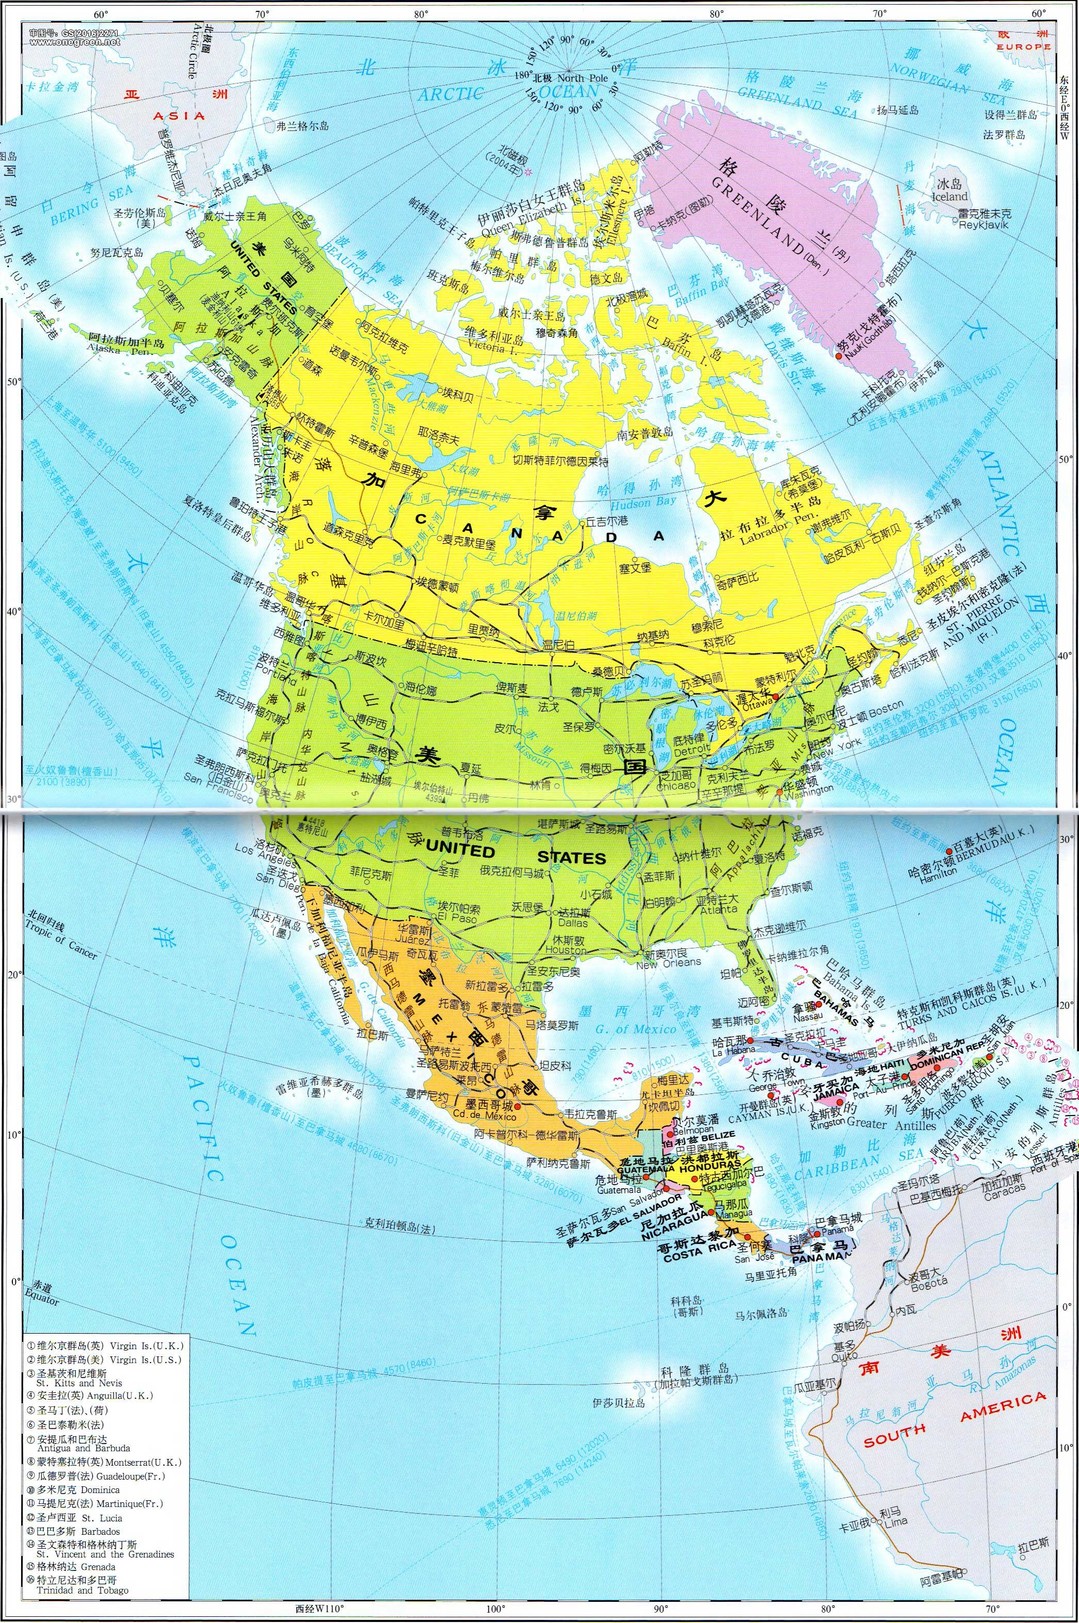 世界各大洲地图以及国旗对照图和所包含的国家